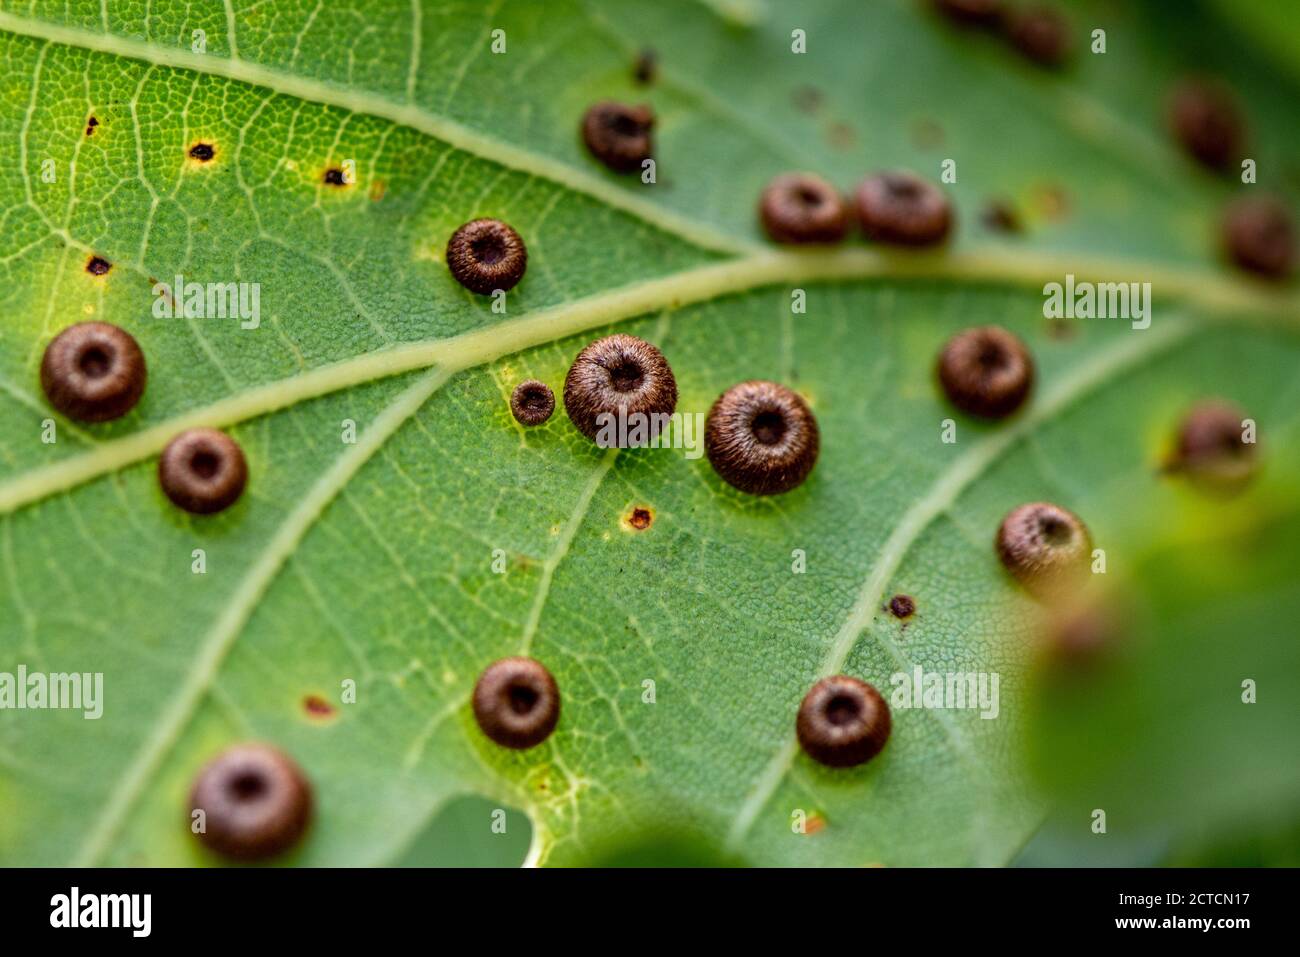 Des galettes en soie sur le dessous d'une feuille de chêne. Chaque petit nid contient un grub qui se développera en guêpe de la Galle. Hampshire, Royaume-Uni Banque D'Images